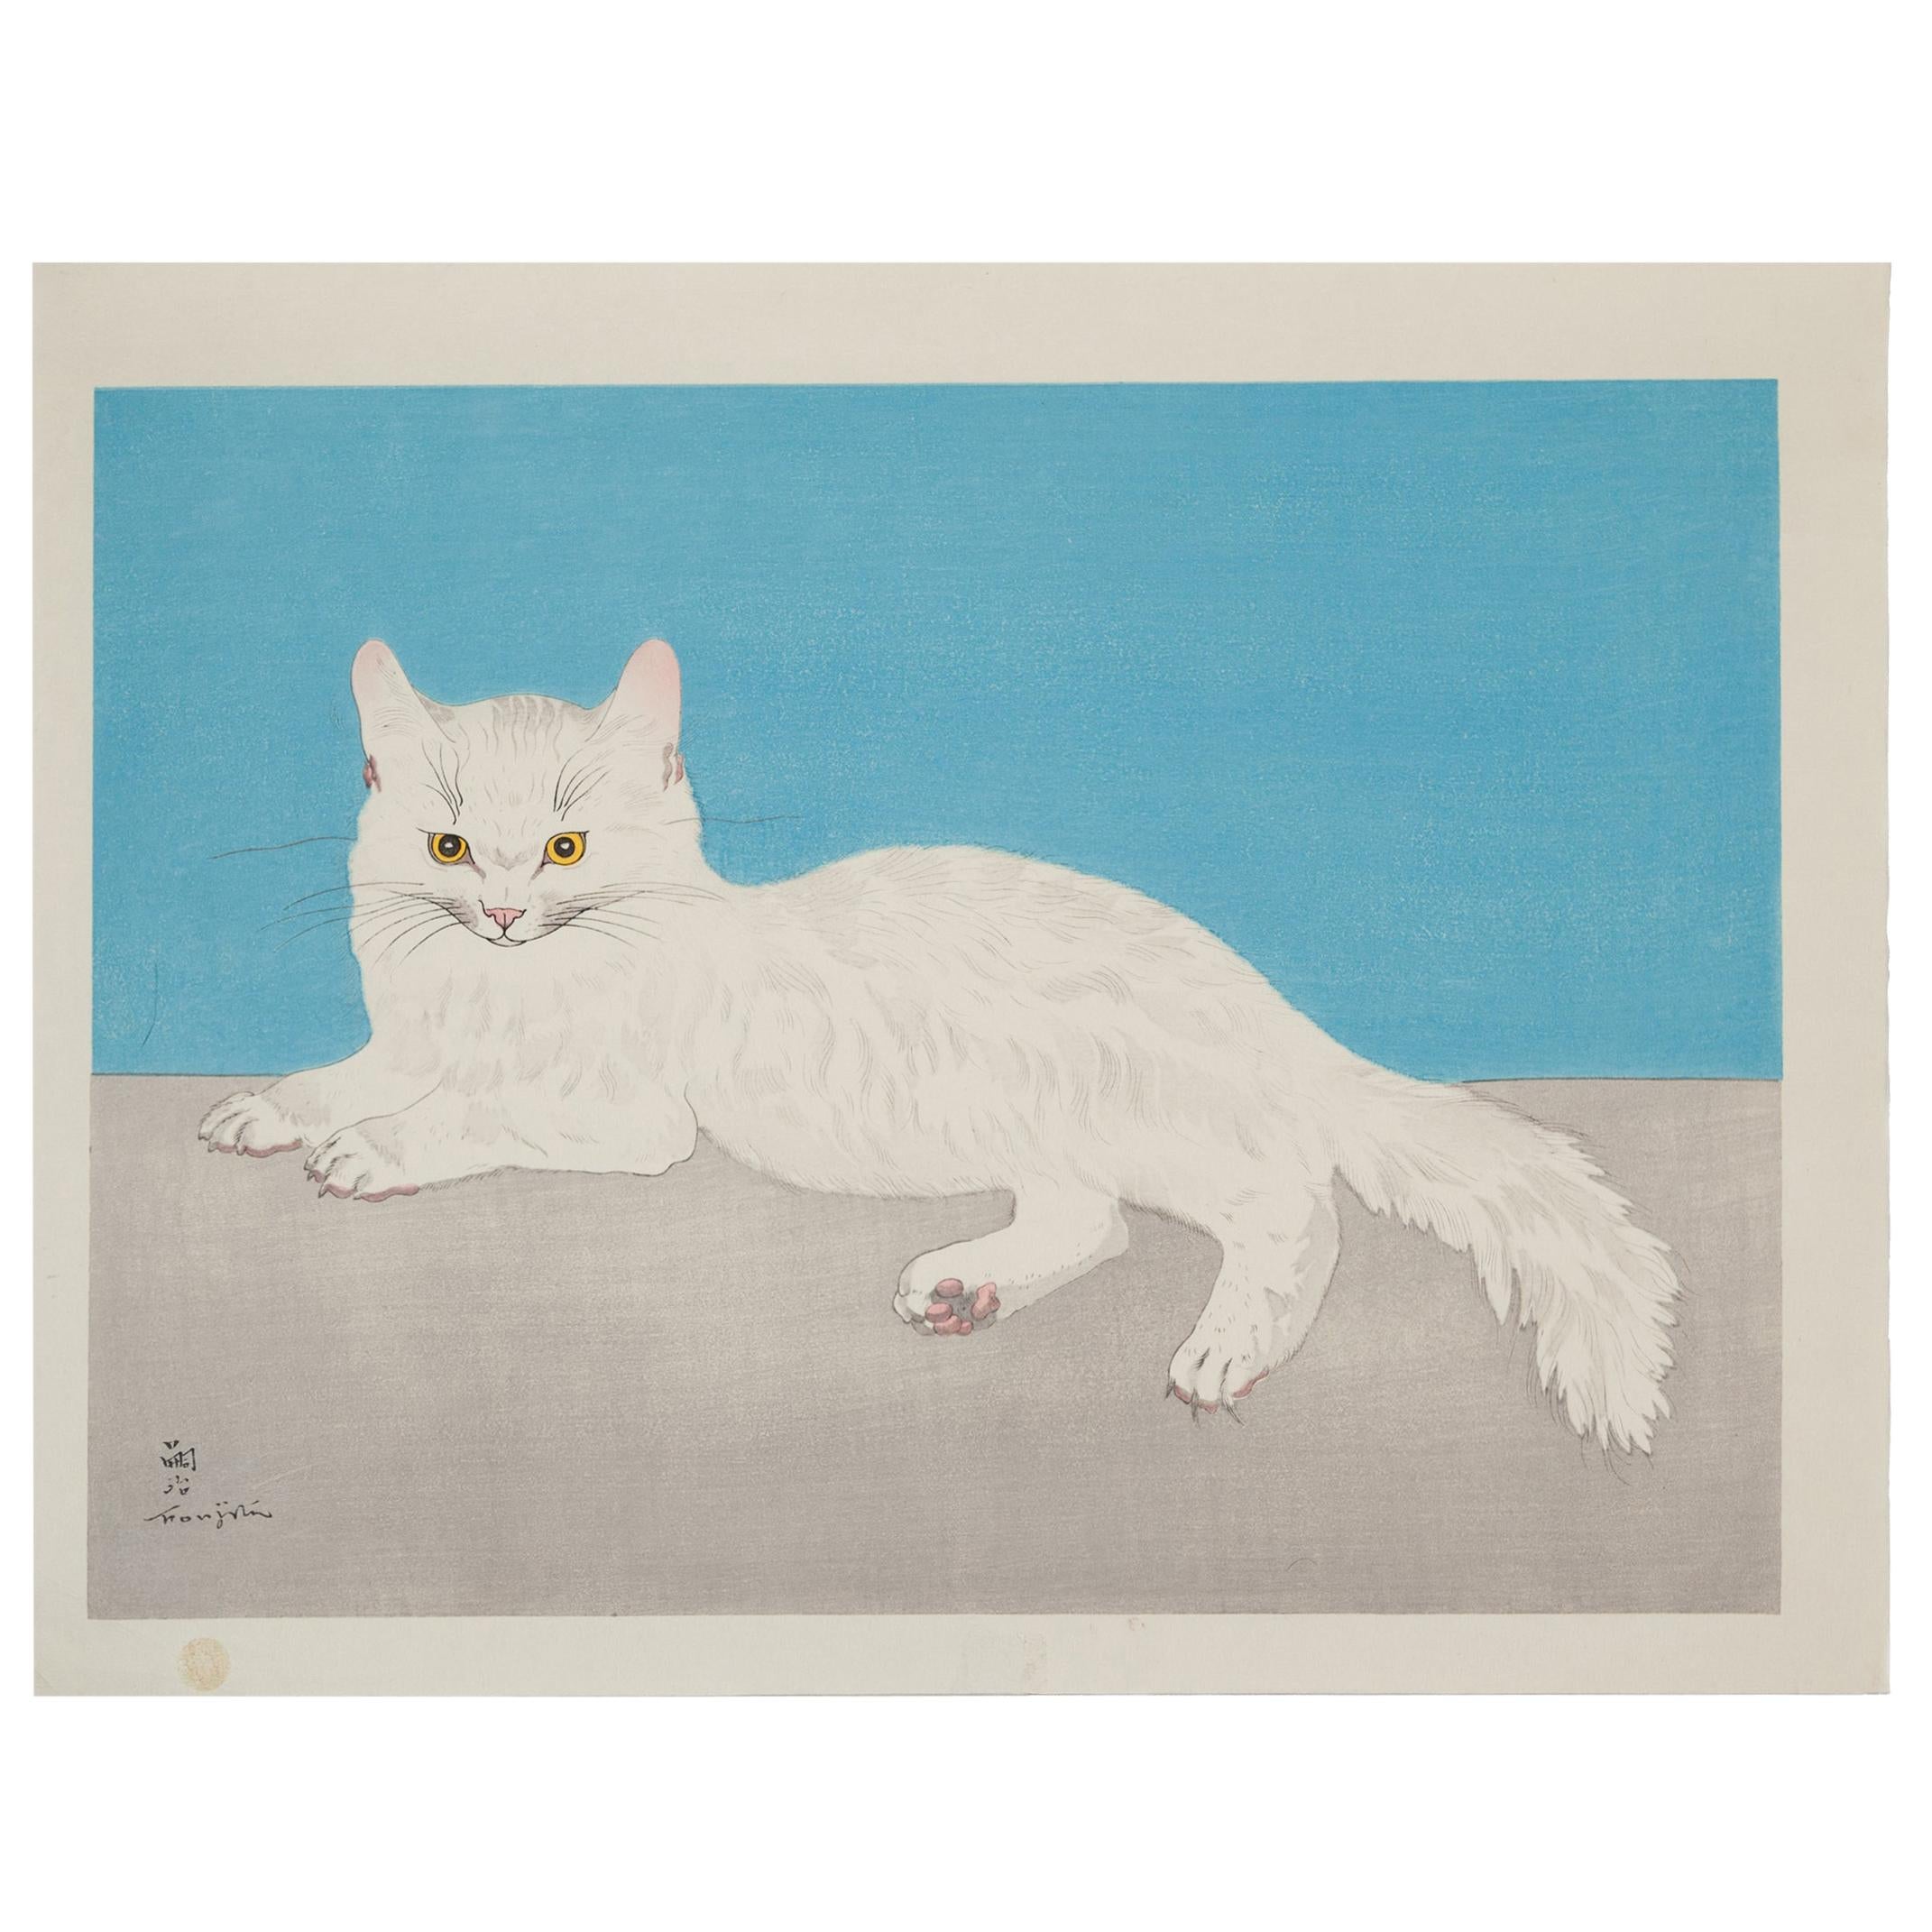 Foujita, Persian White Cat, Original Woodblock Print, Early 20th Century Art